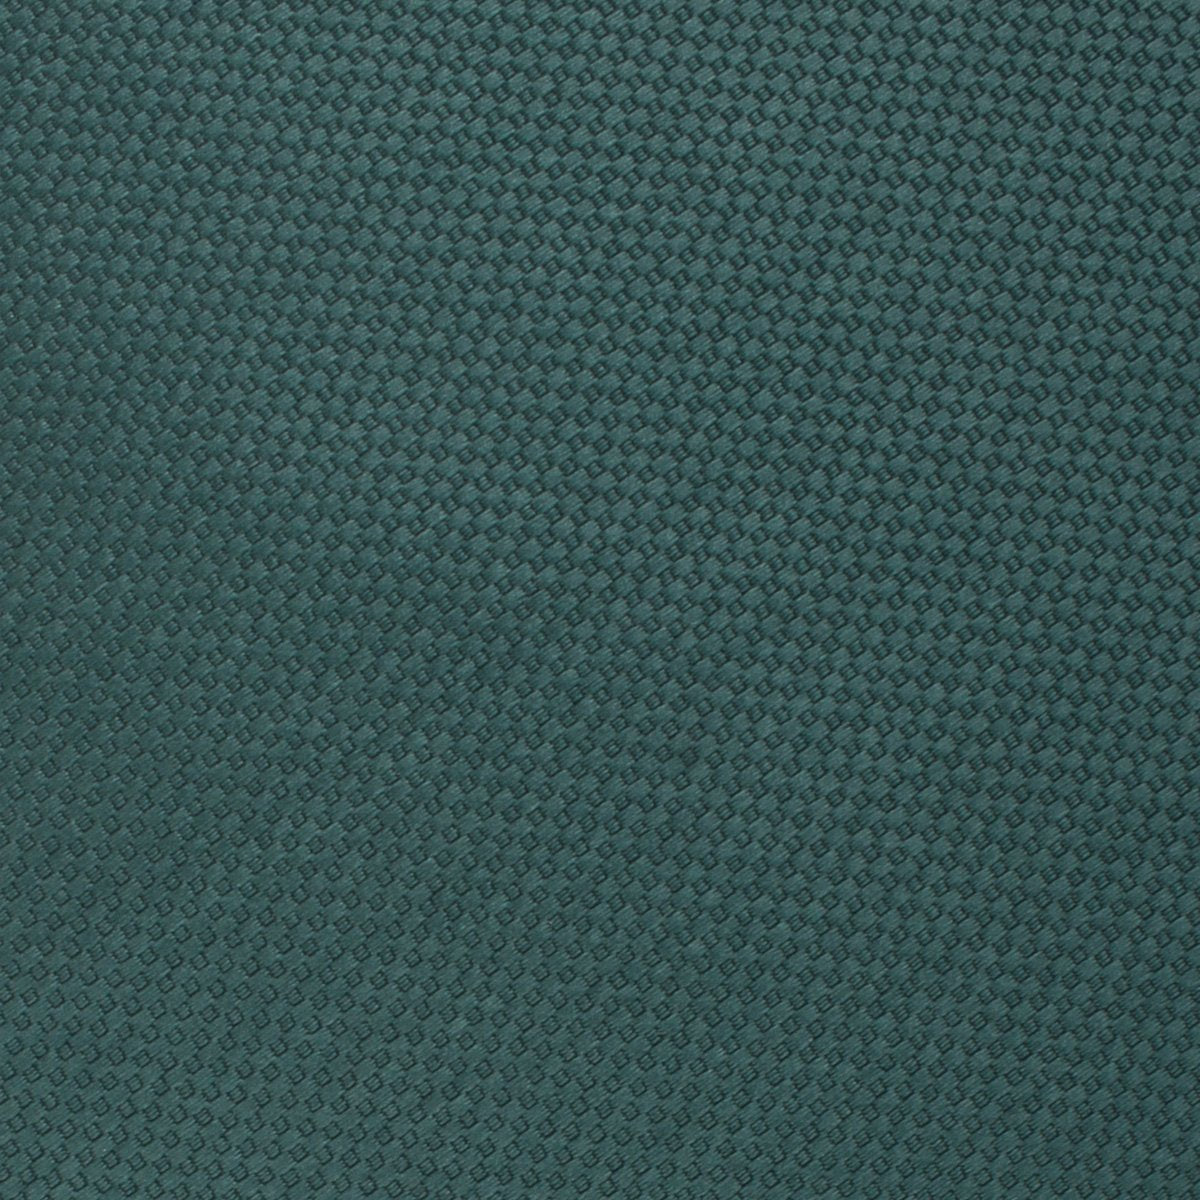 Dark Green Basket Weave Necktie Fabric